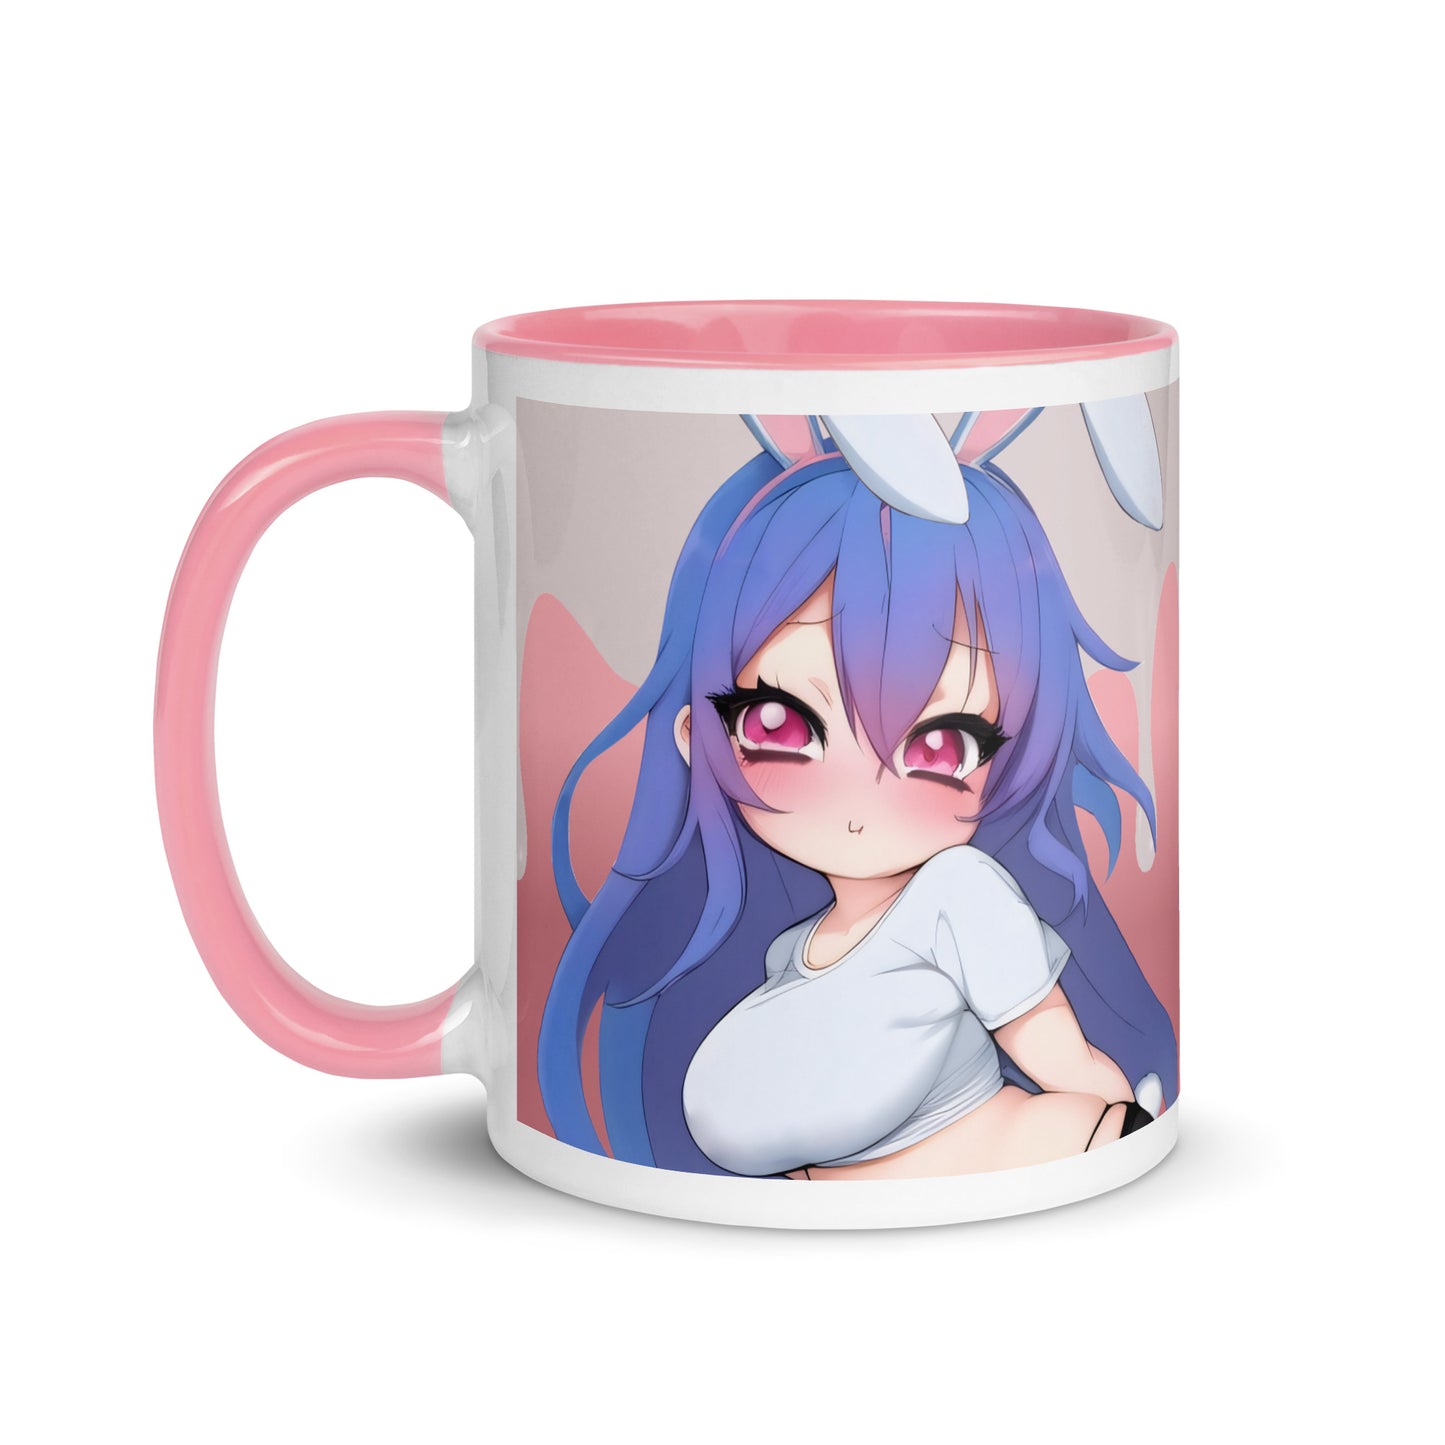 The Harem Bunny Girl Mug